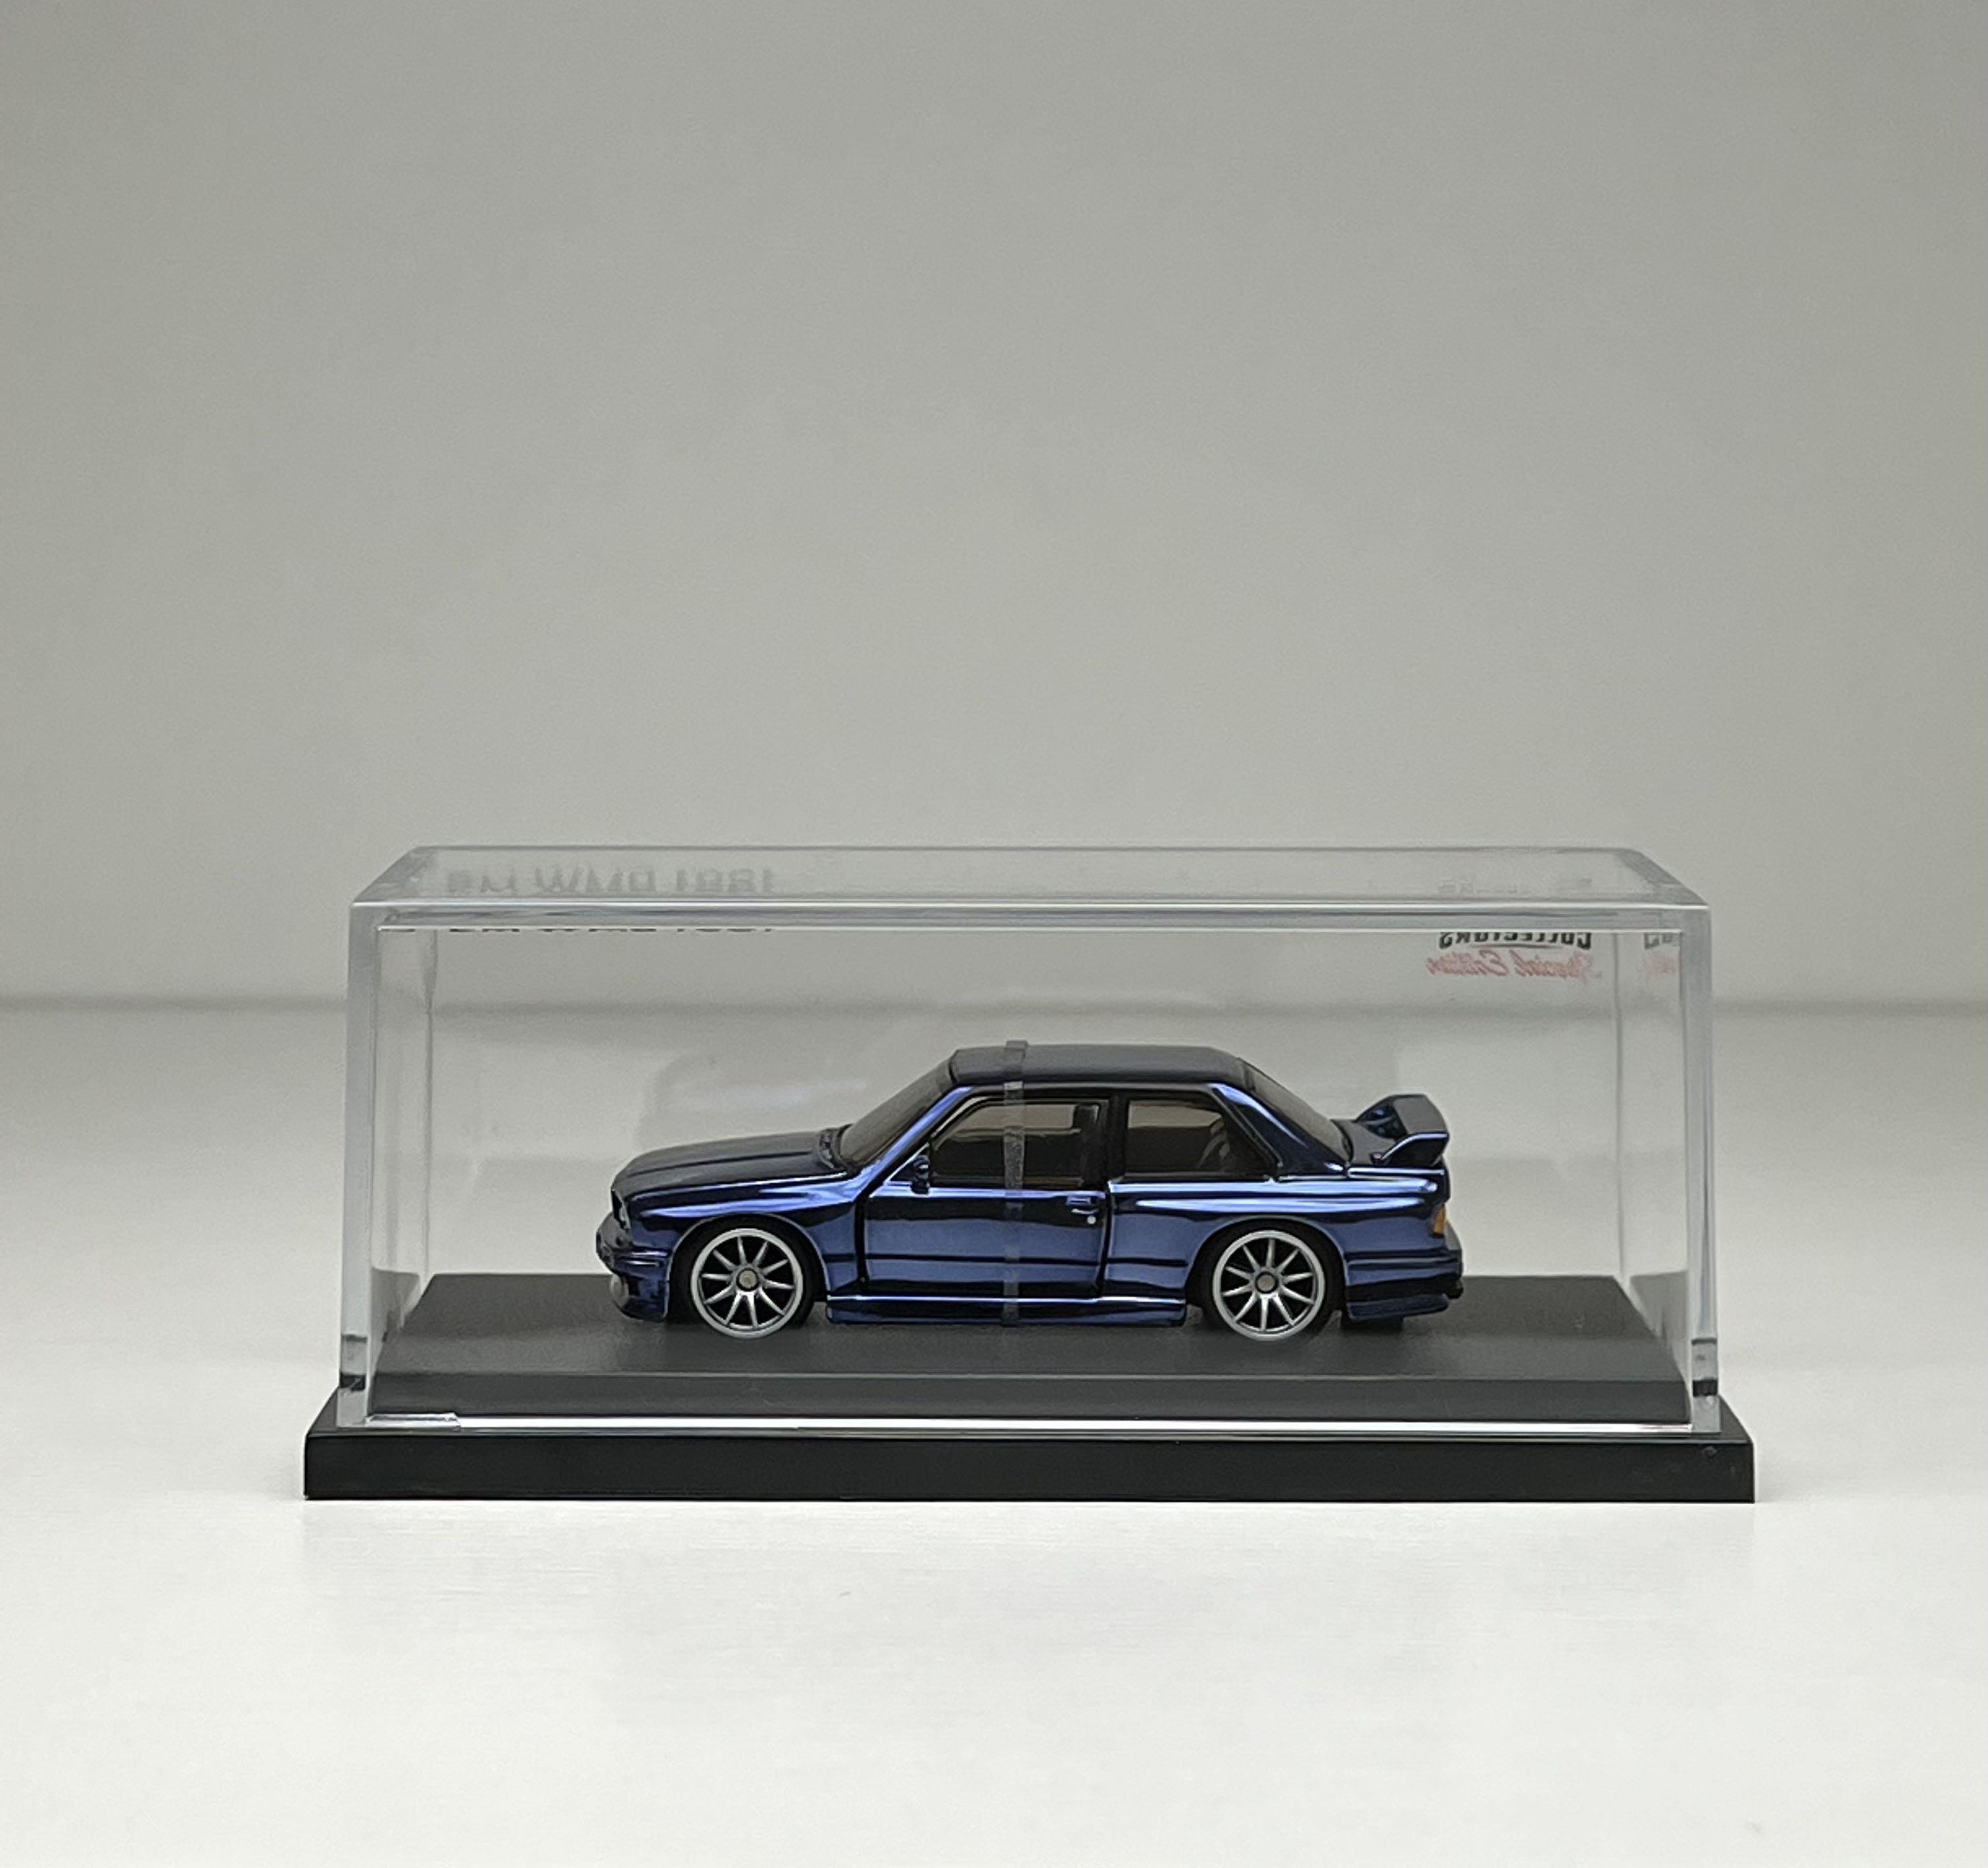 CLUB DyDo Miniature Car Collection Diecast Mini Car Model NISSAN SKYLINE GT-R 